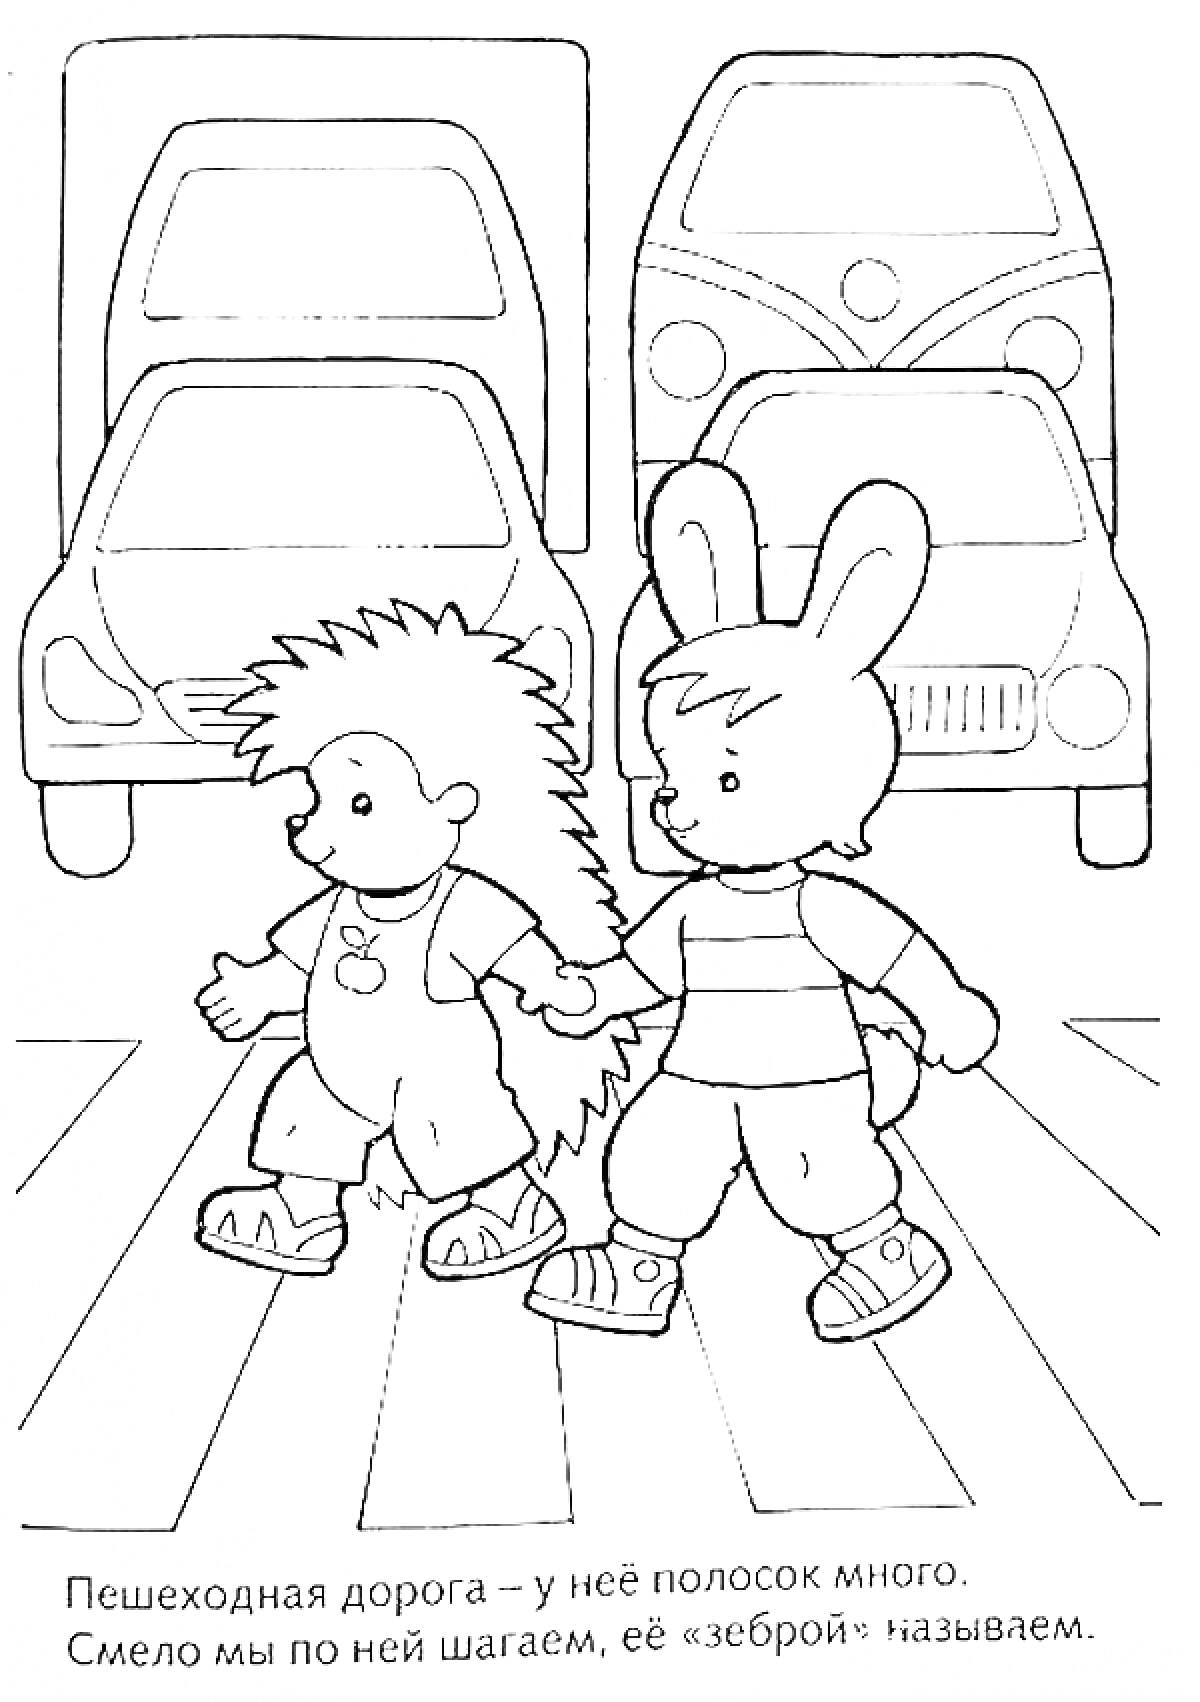 Дети зверюшки на пешеходном переходе перед машинами